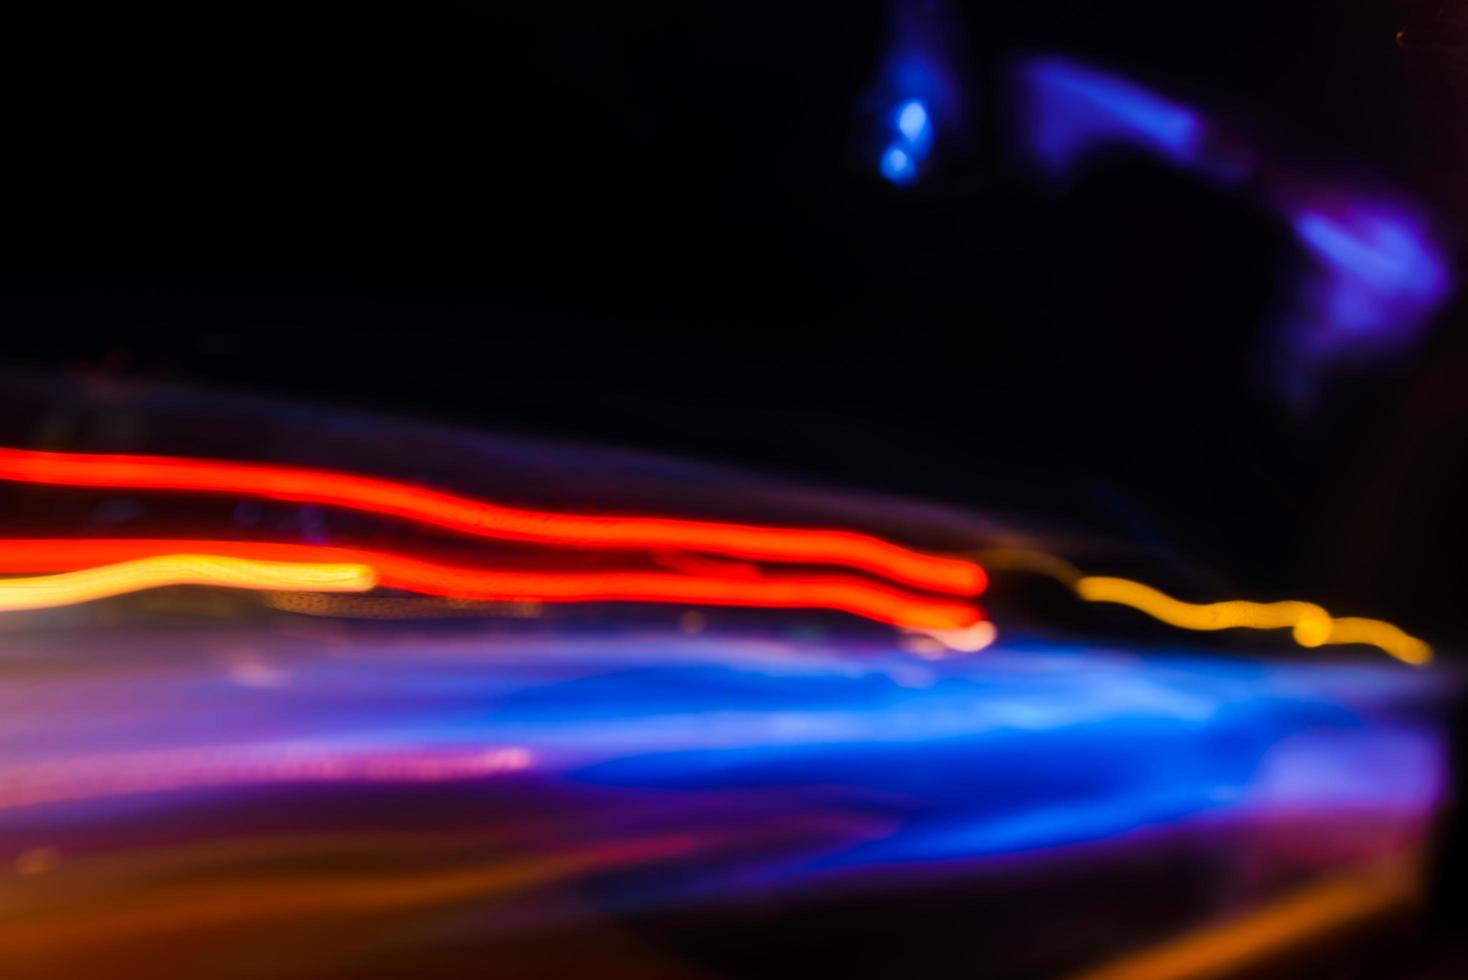 luzes de movimento abstrato do tráfego noturno na cidade foto